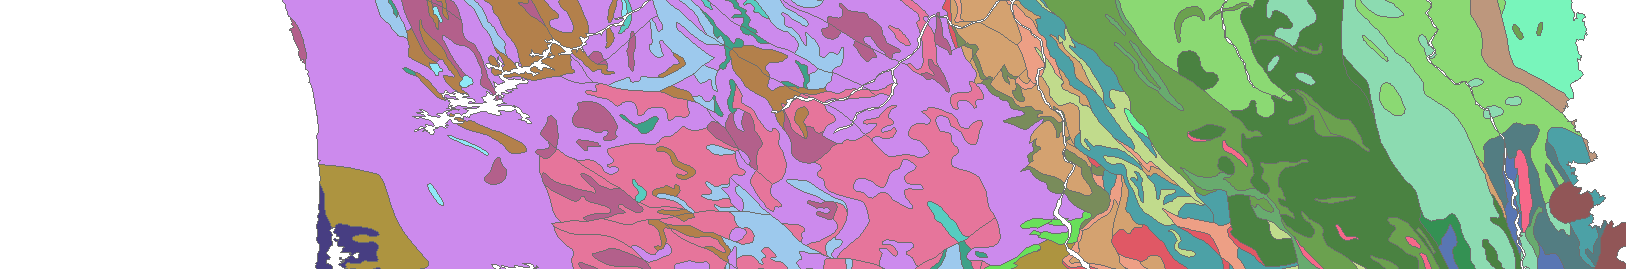 Application : cartographie géologique à l aide d une image Landsat-7 80 0'0"W 80 0'0"W 75 0'0"W 75 0'0"W 70 0'0"W 70 0'0"W 65 0'0"W 65 0'0"W 62 0'0"N 62 0'0"N 0 65 130 130 260